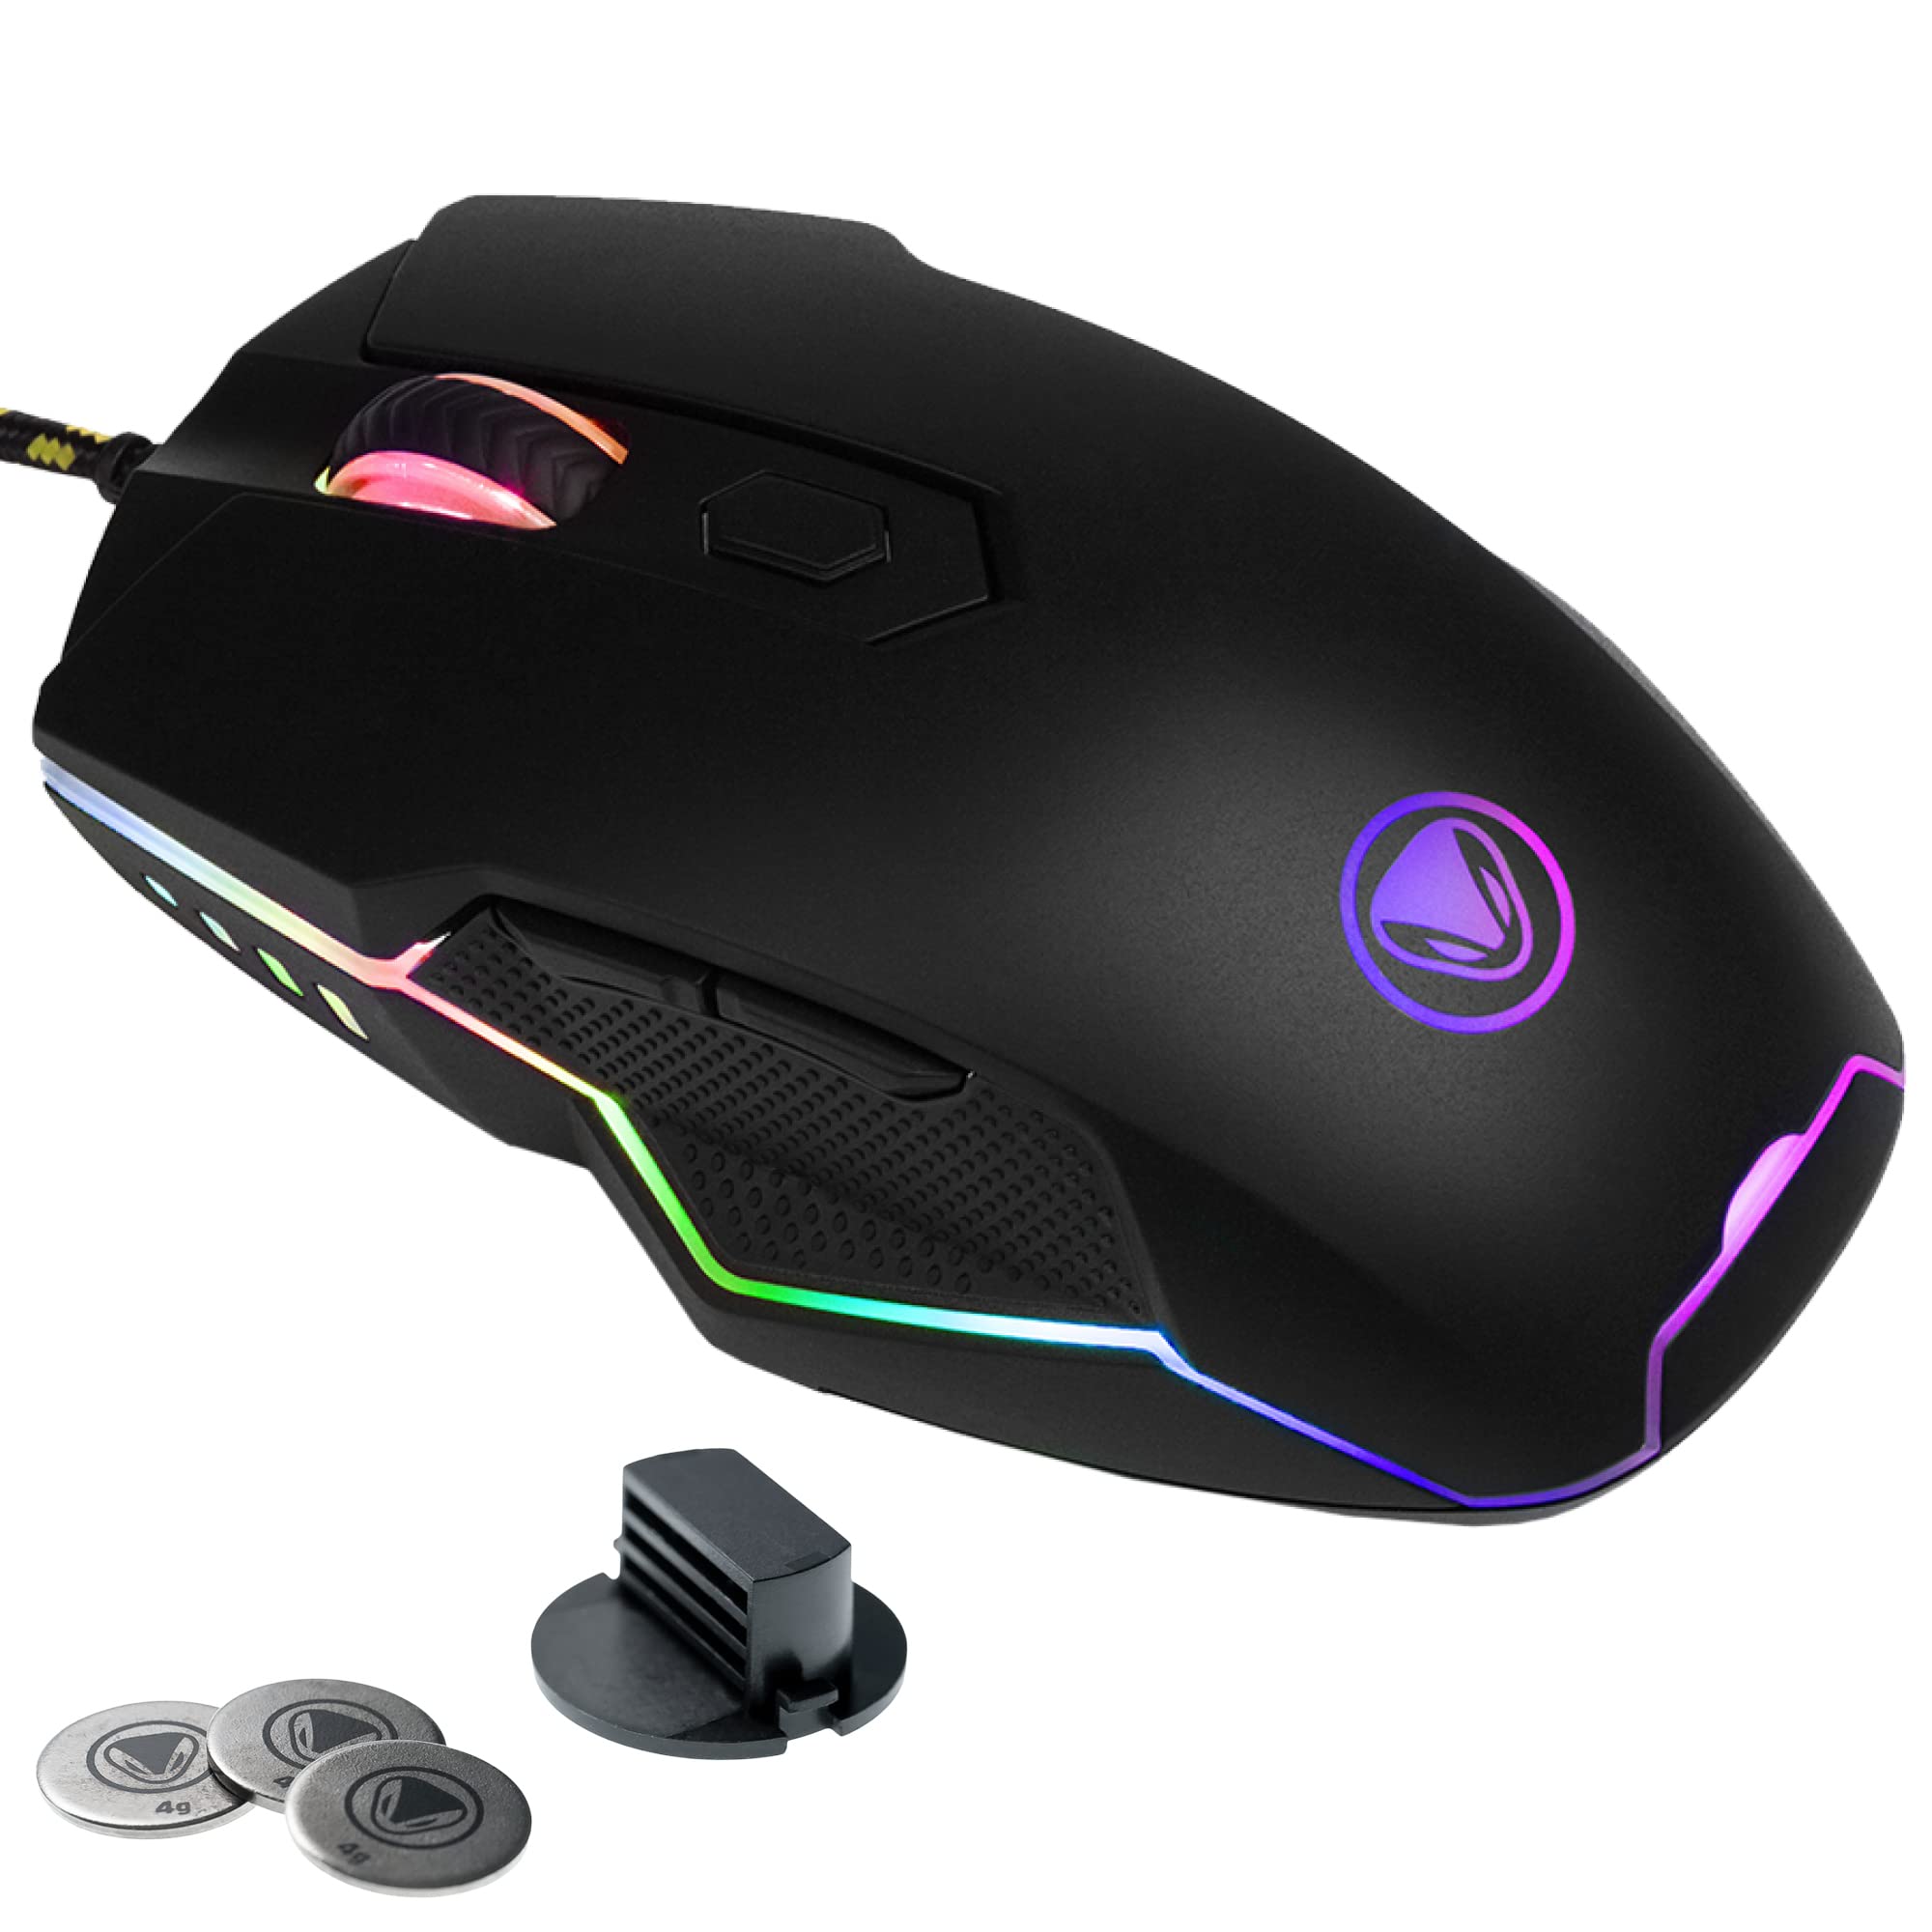 snakebyte PC GAME:MOUSE ULTRA - LED RGB Gaming Maus / 16.8 Mio Farben/hohe Präzision/max. Beschleunigung 50G/ optischer Sensor bis zu 16000DPI / reibungsarme Gleitfläche / 5 programmierbare Tasten